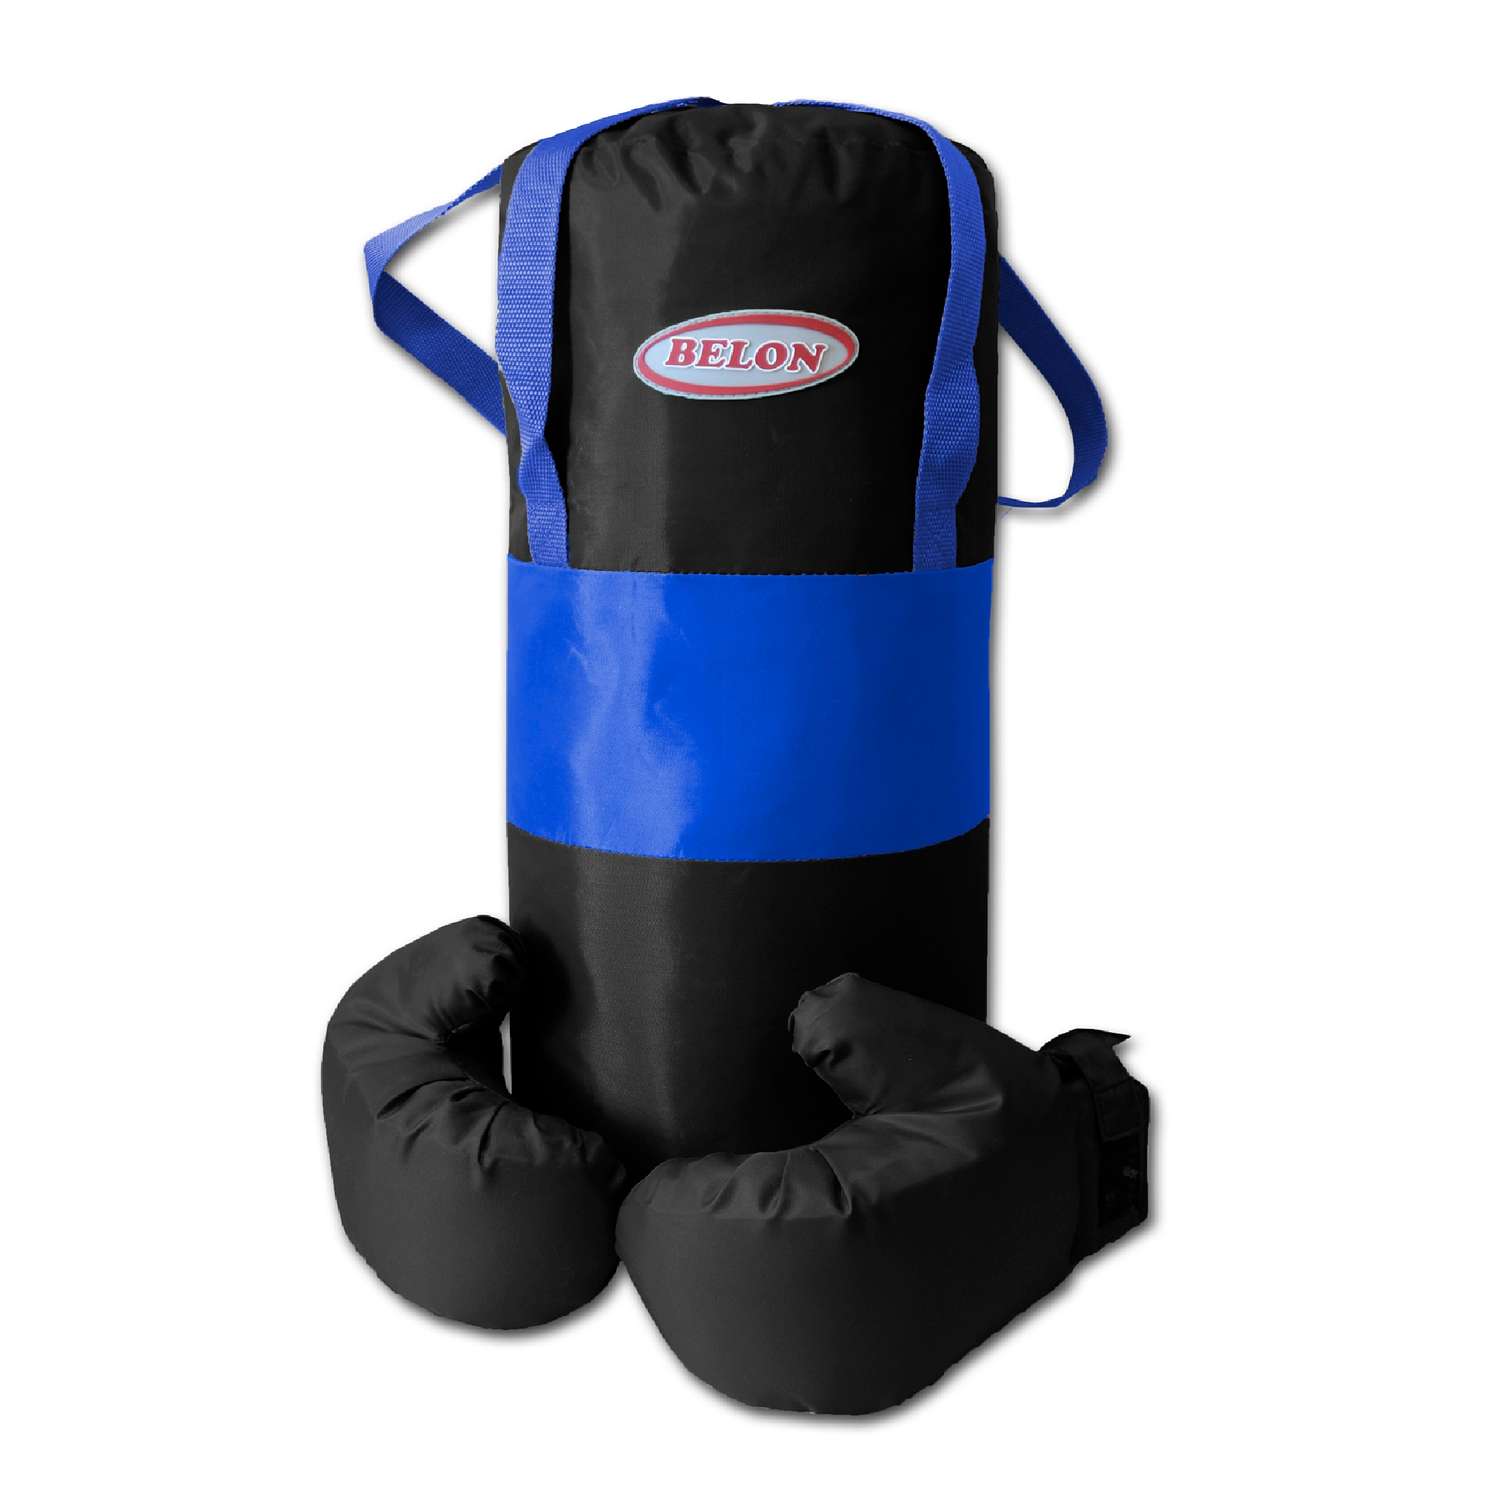 Детский набор для бокса Belon familia груша 50см х 20см с перчатками цвет синий и чёрный - фото 1